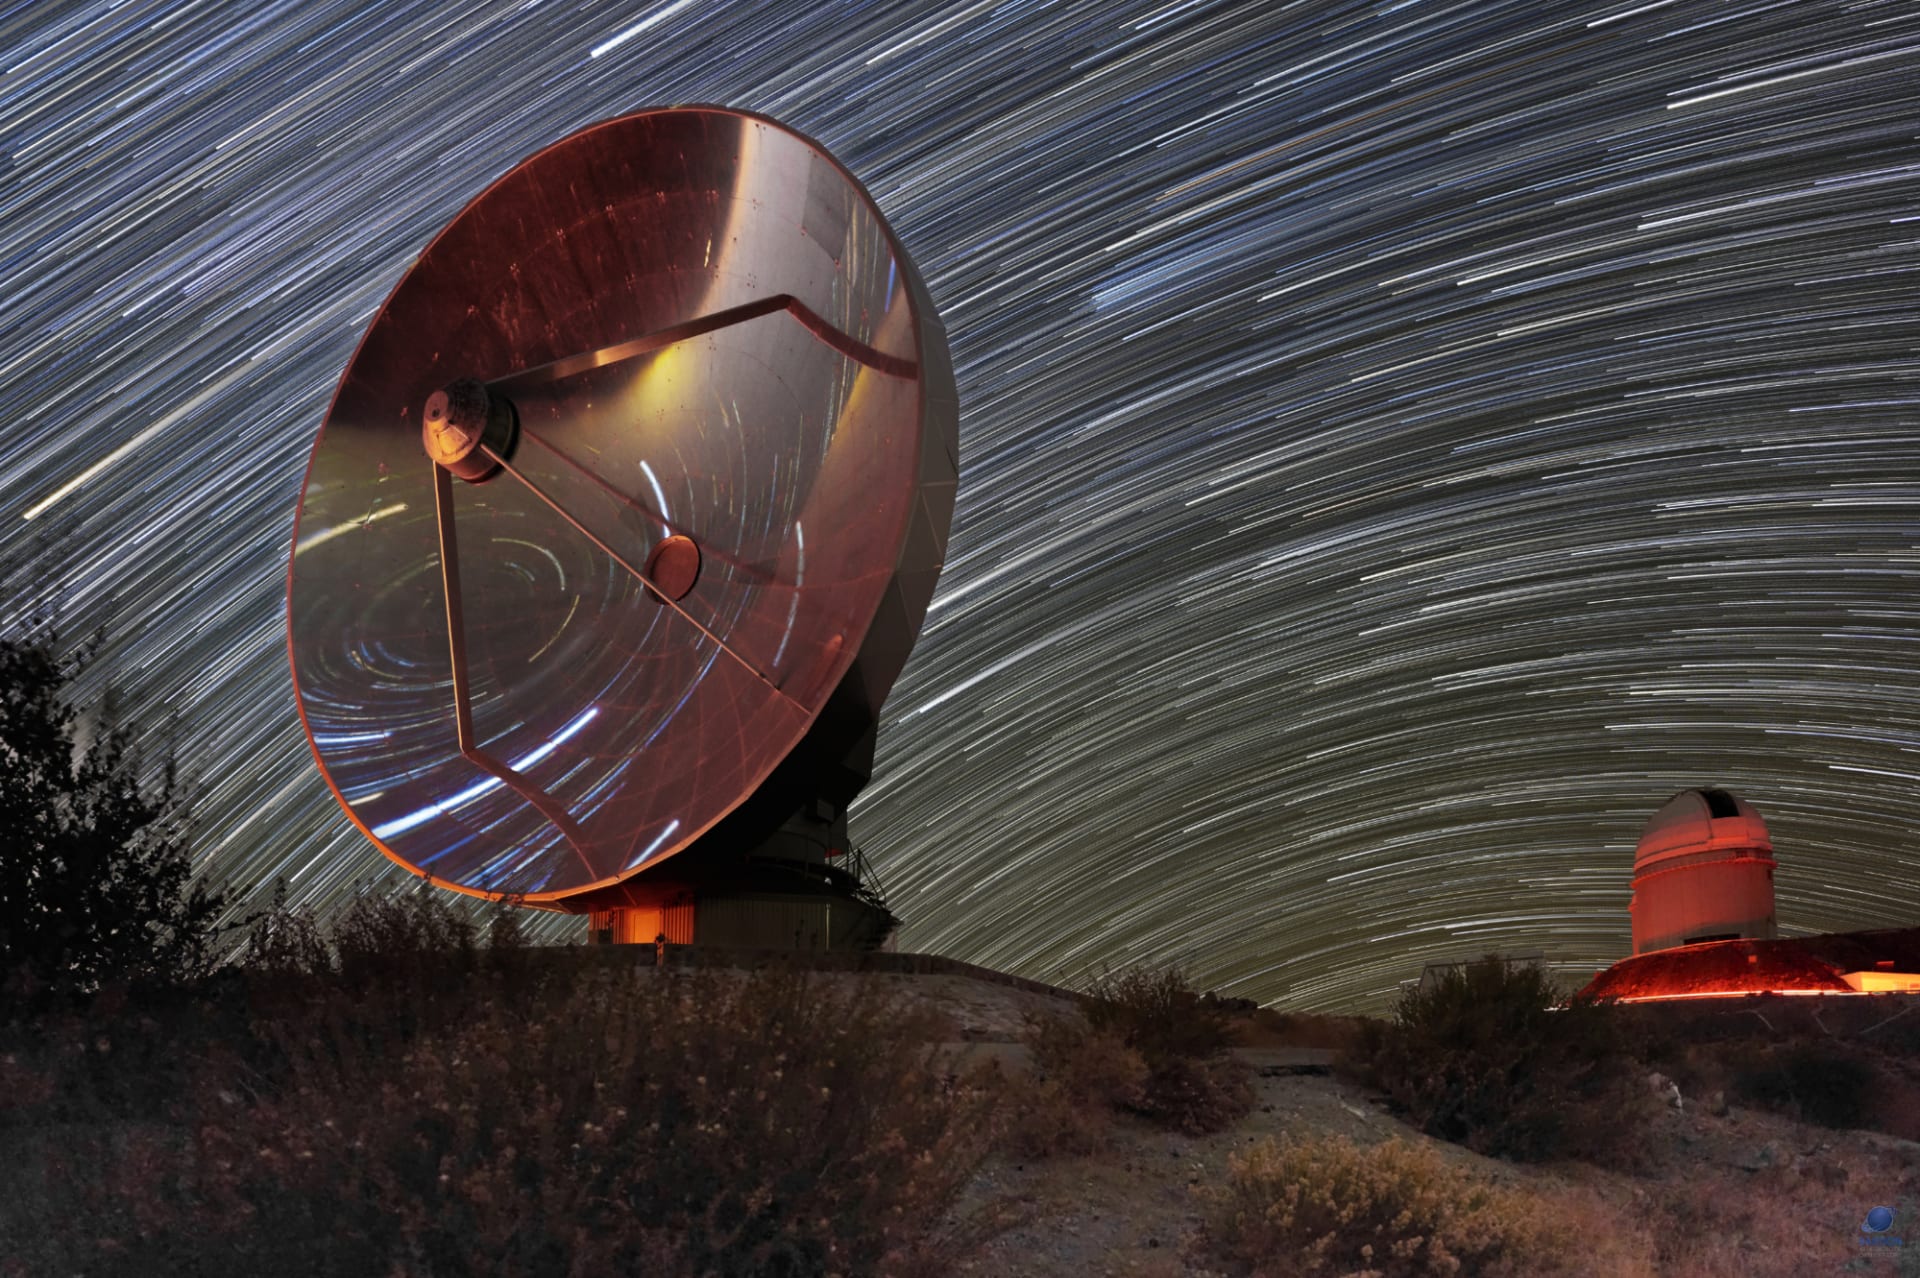 Observatoř La Silla v Chile